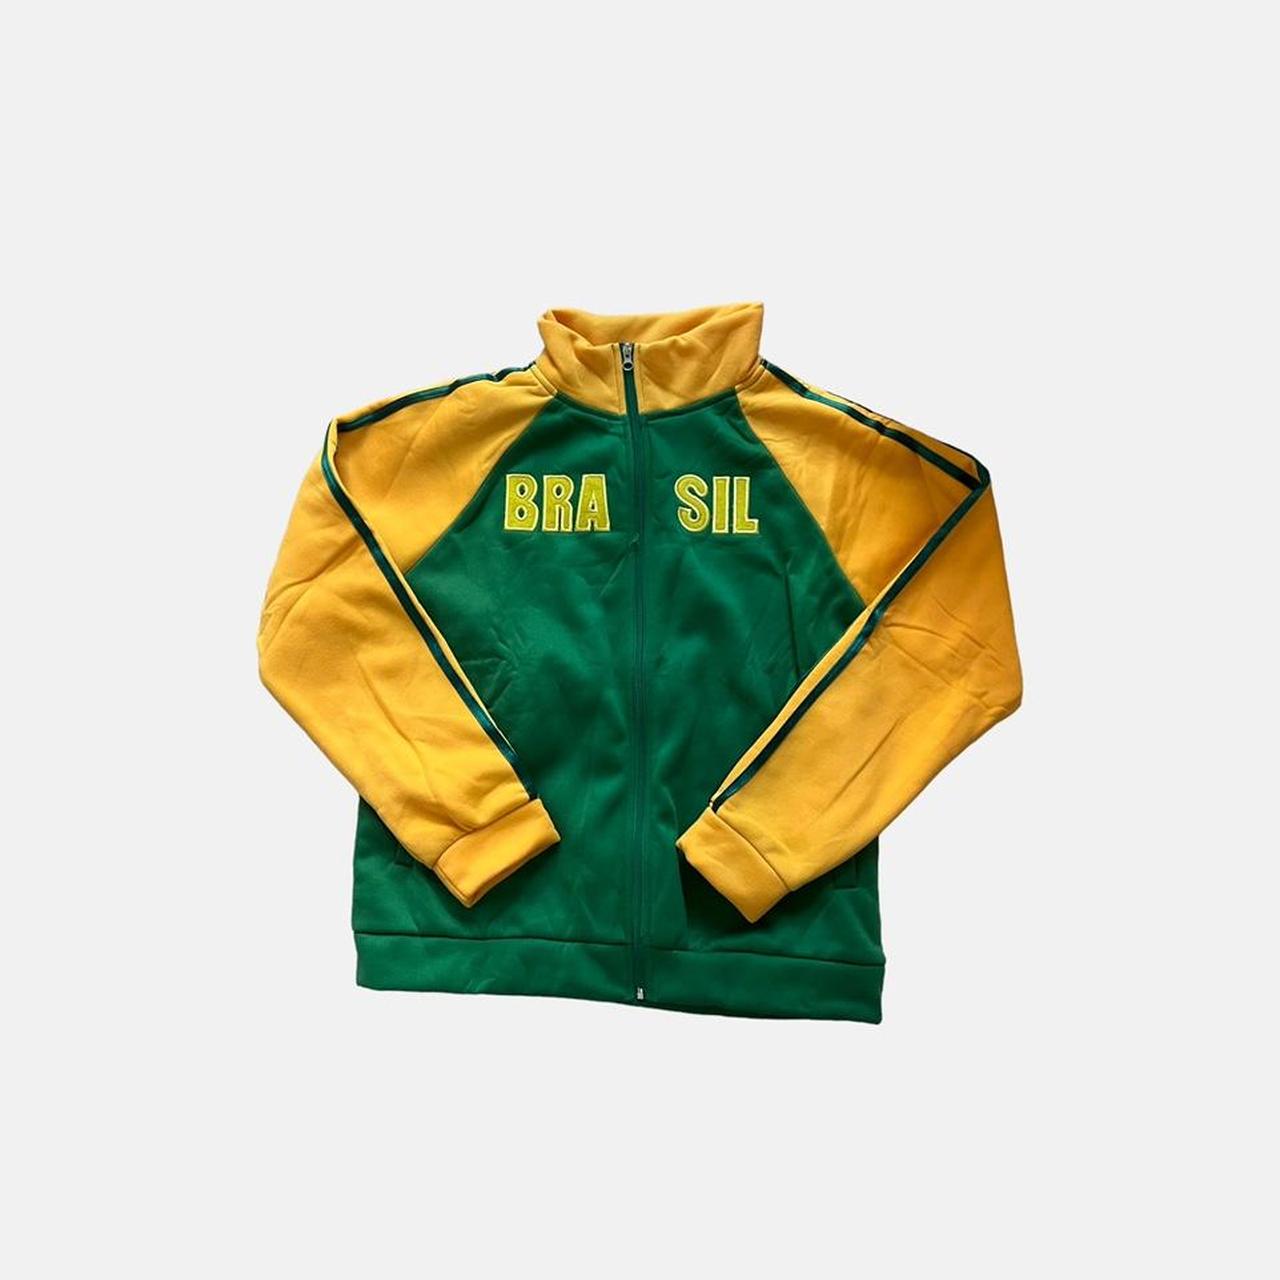 Brasil yellow and green zip up sweatshirt jumper top... - Depop